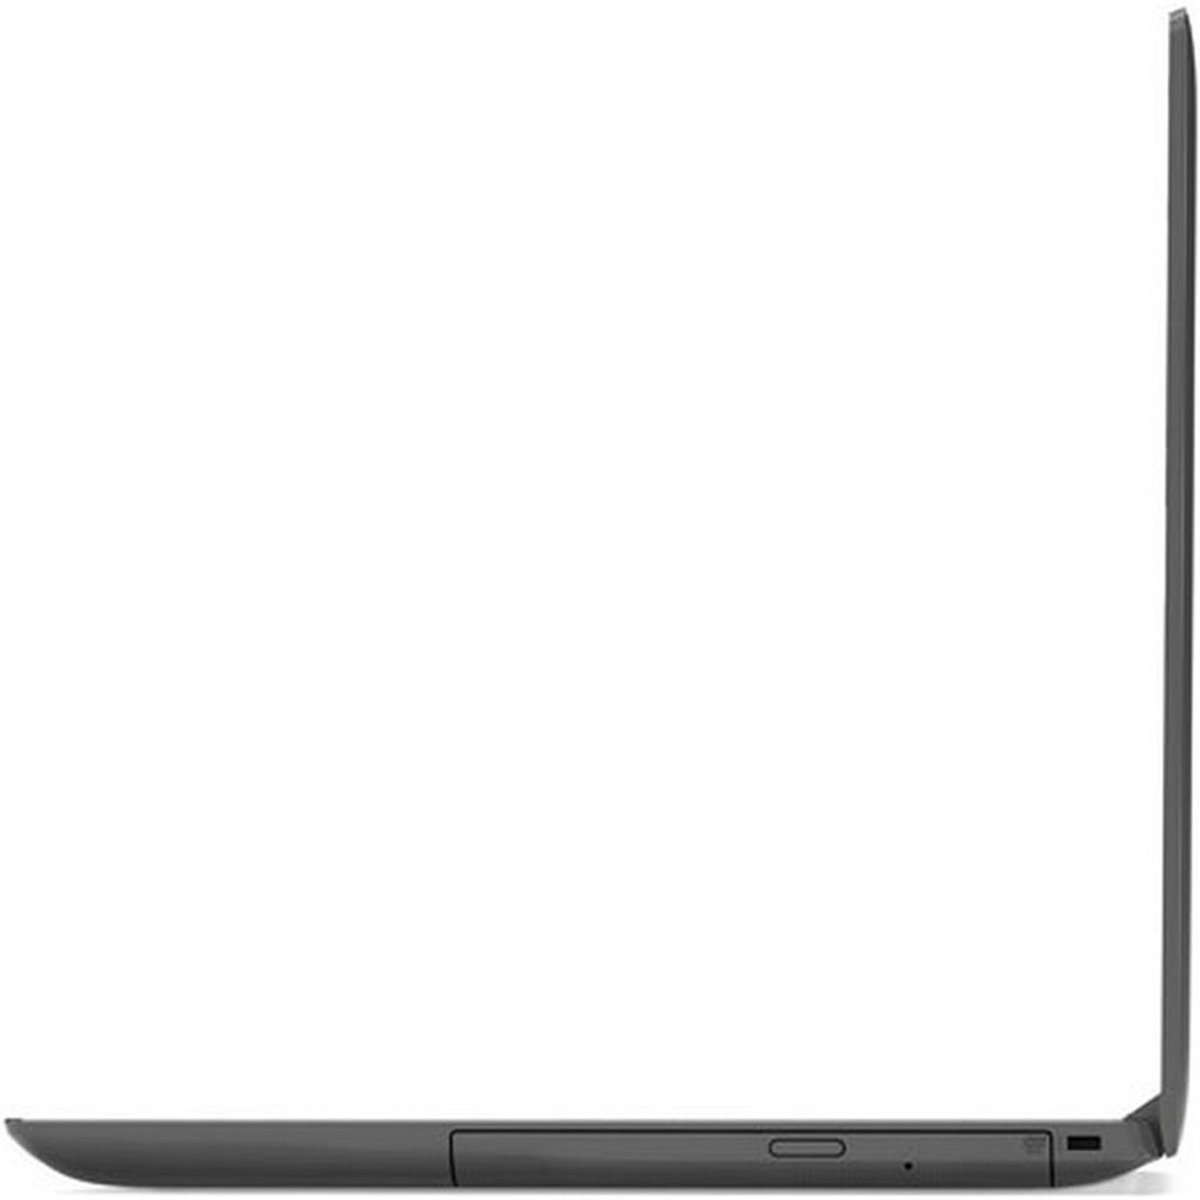 Lenovo Notebook Ideapad 130 81H5000-5AX AMD Black